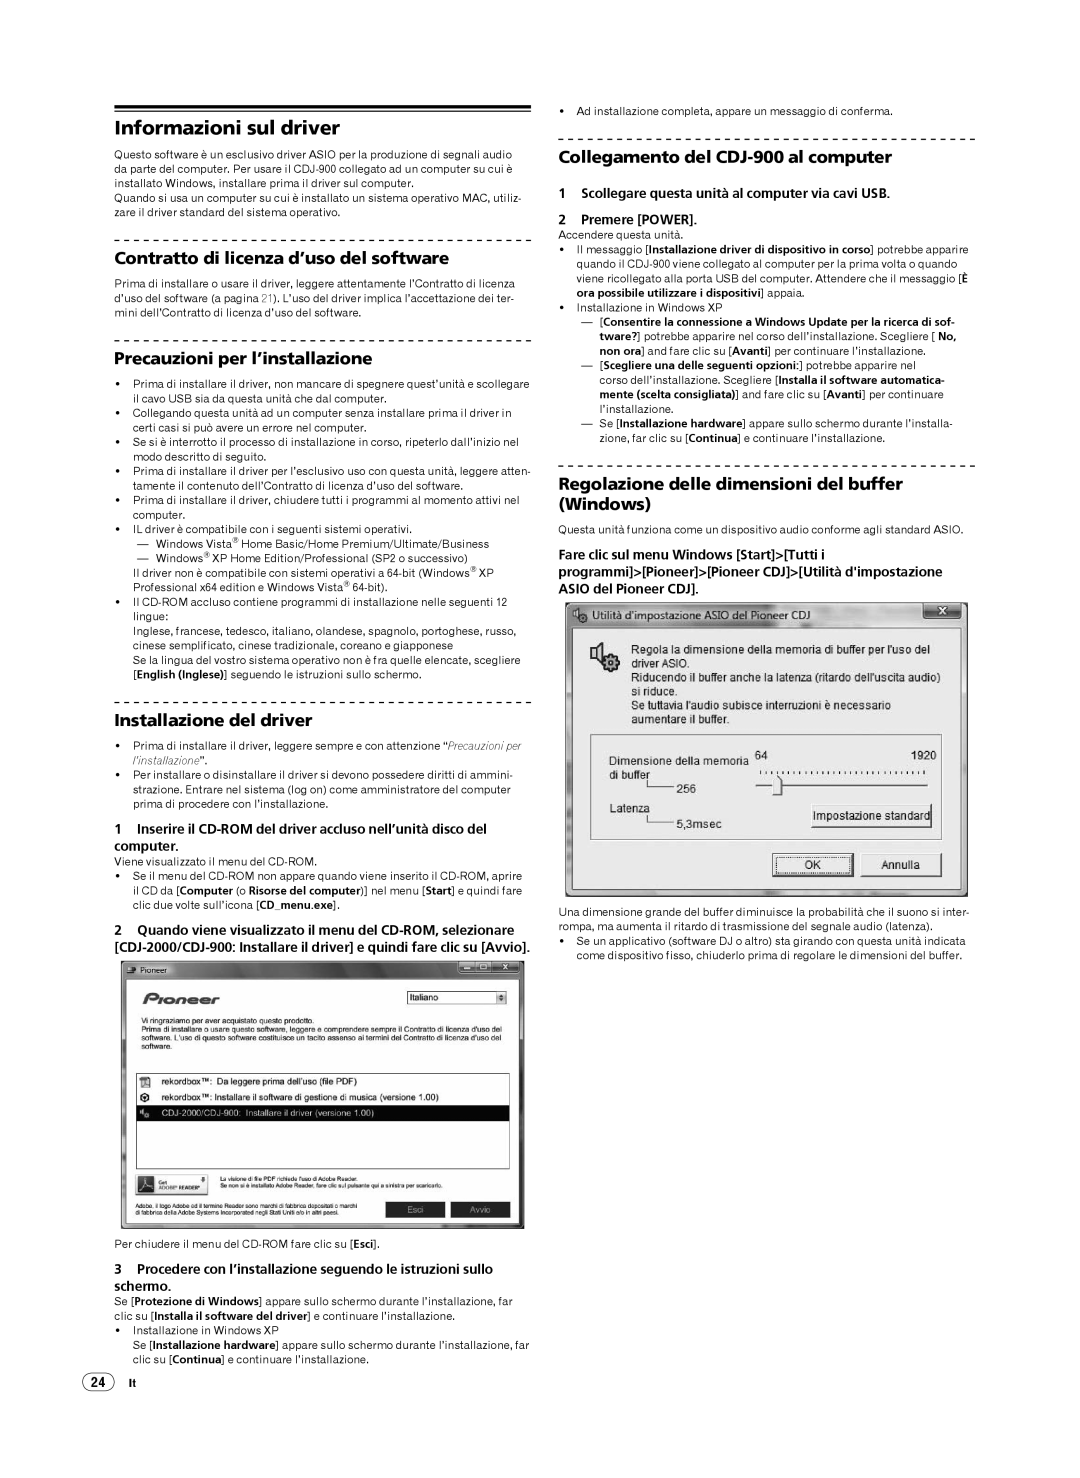 Pioneer CDJ-900 Informazioni sul driver, Contratto di licenza d’uso del software, Precauzioni per l’installazione 